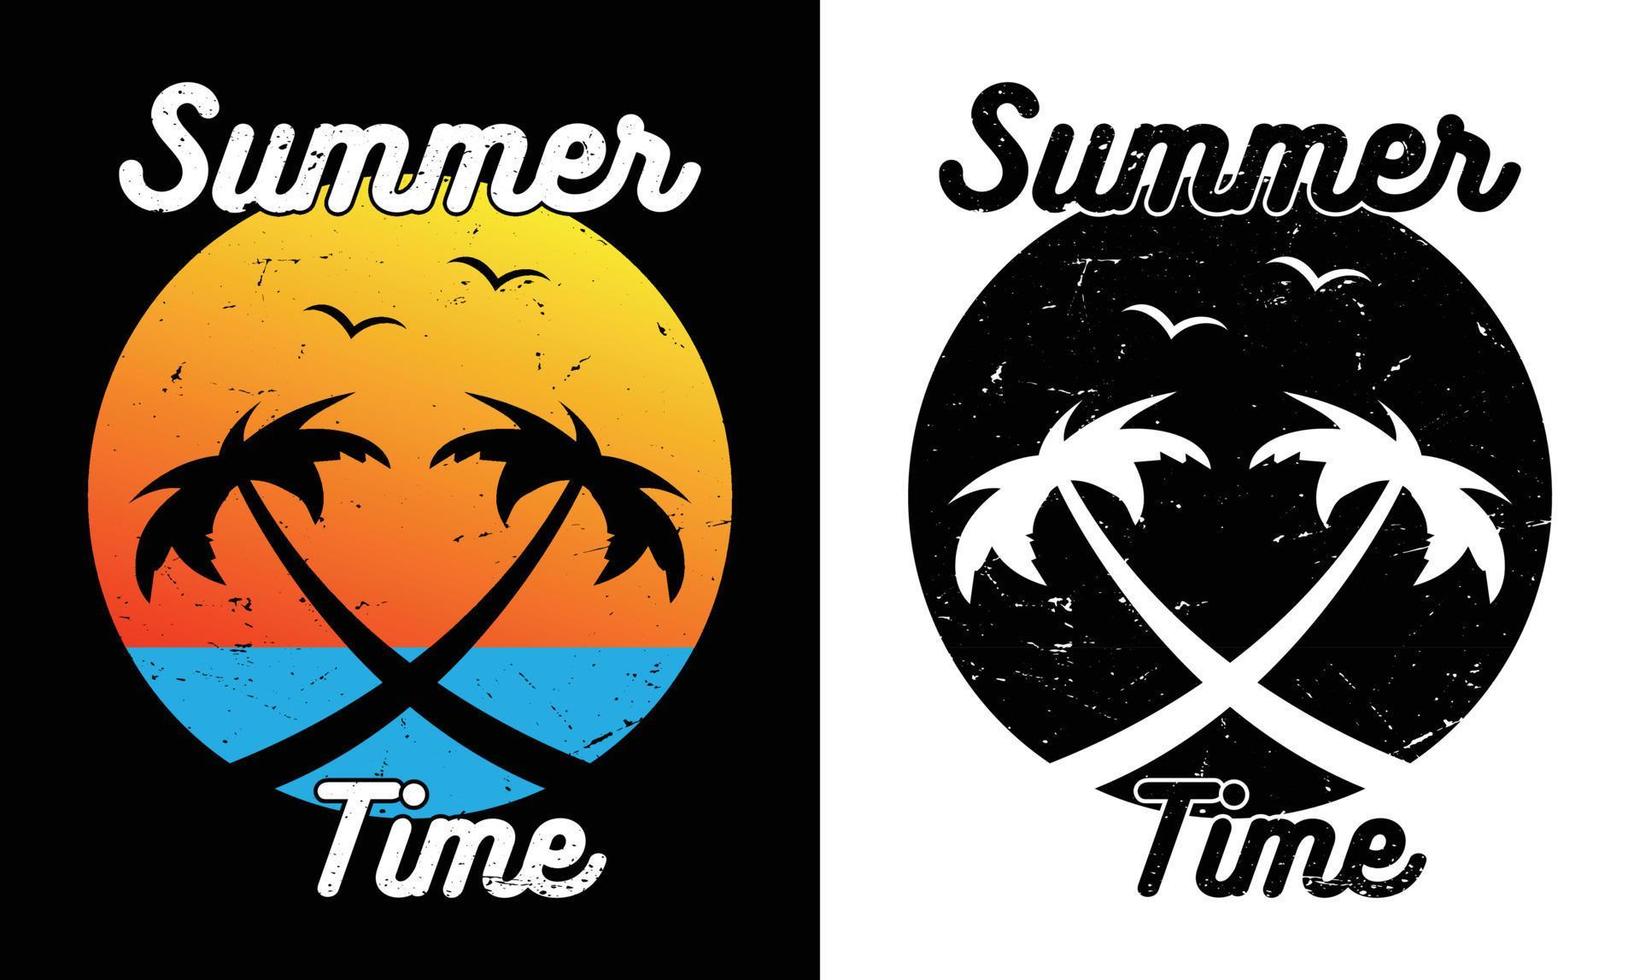 diseño de camiseta de cita de verano vector